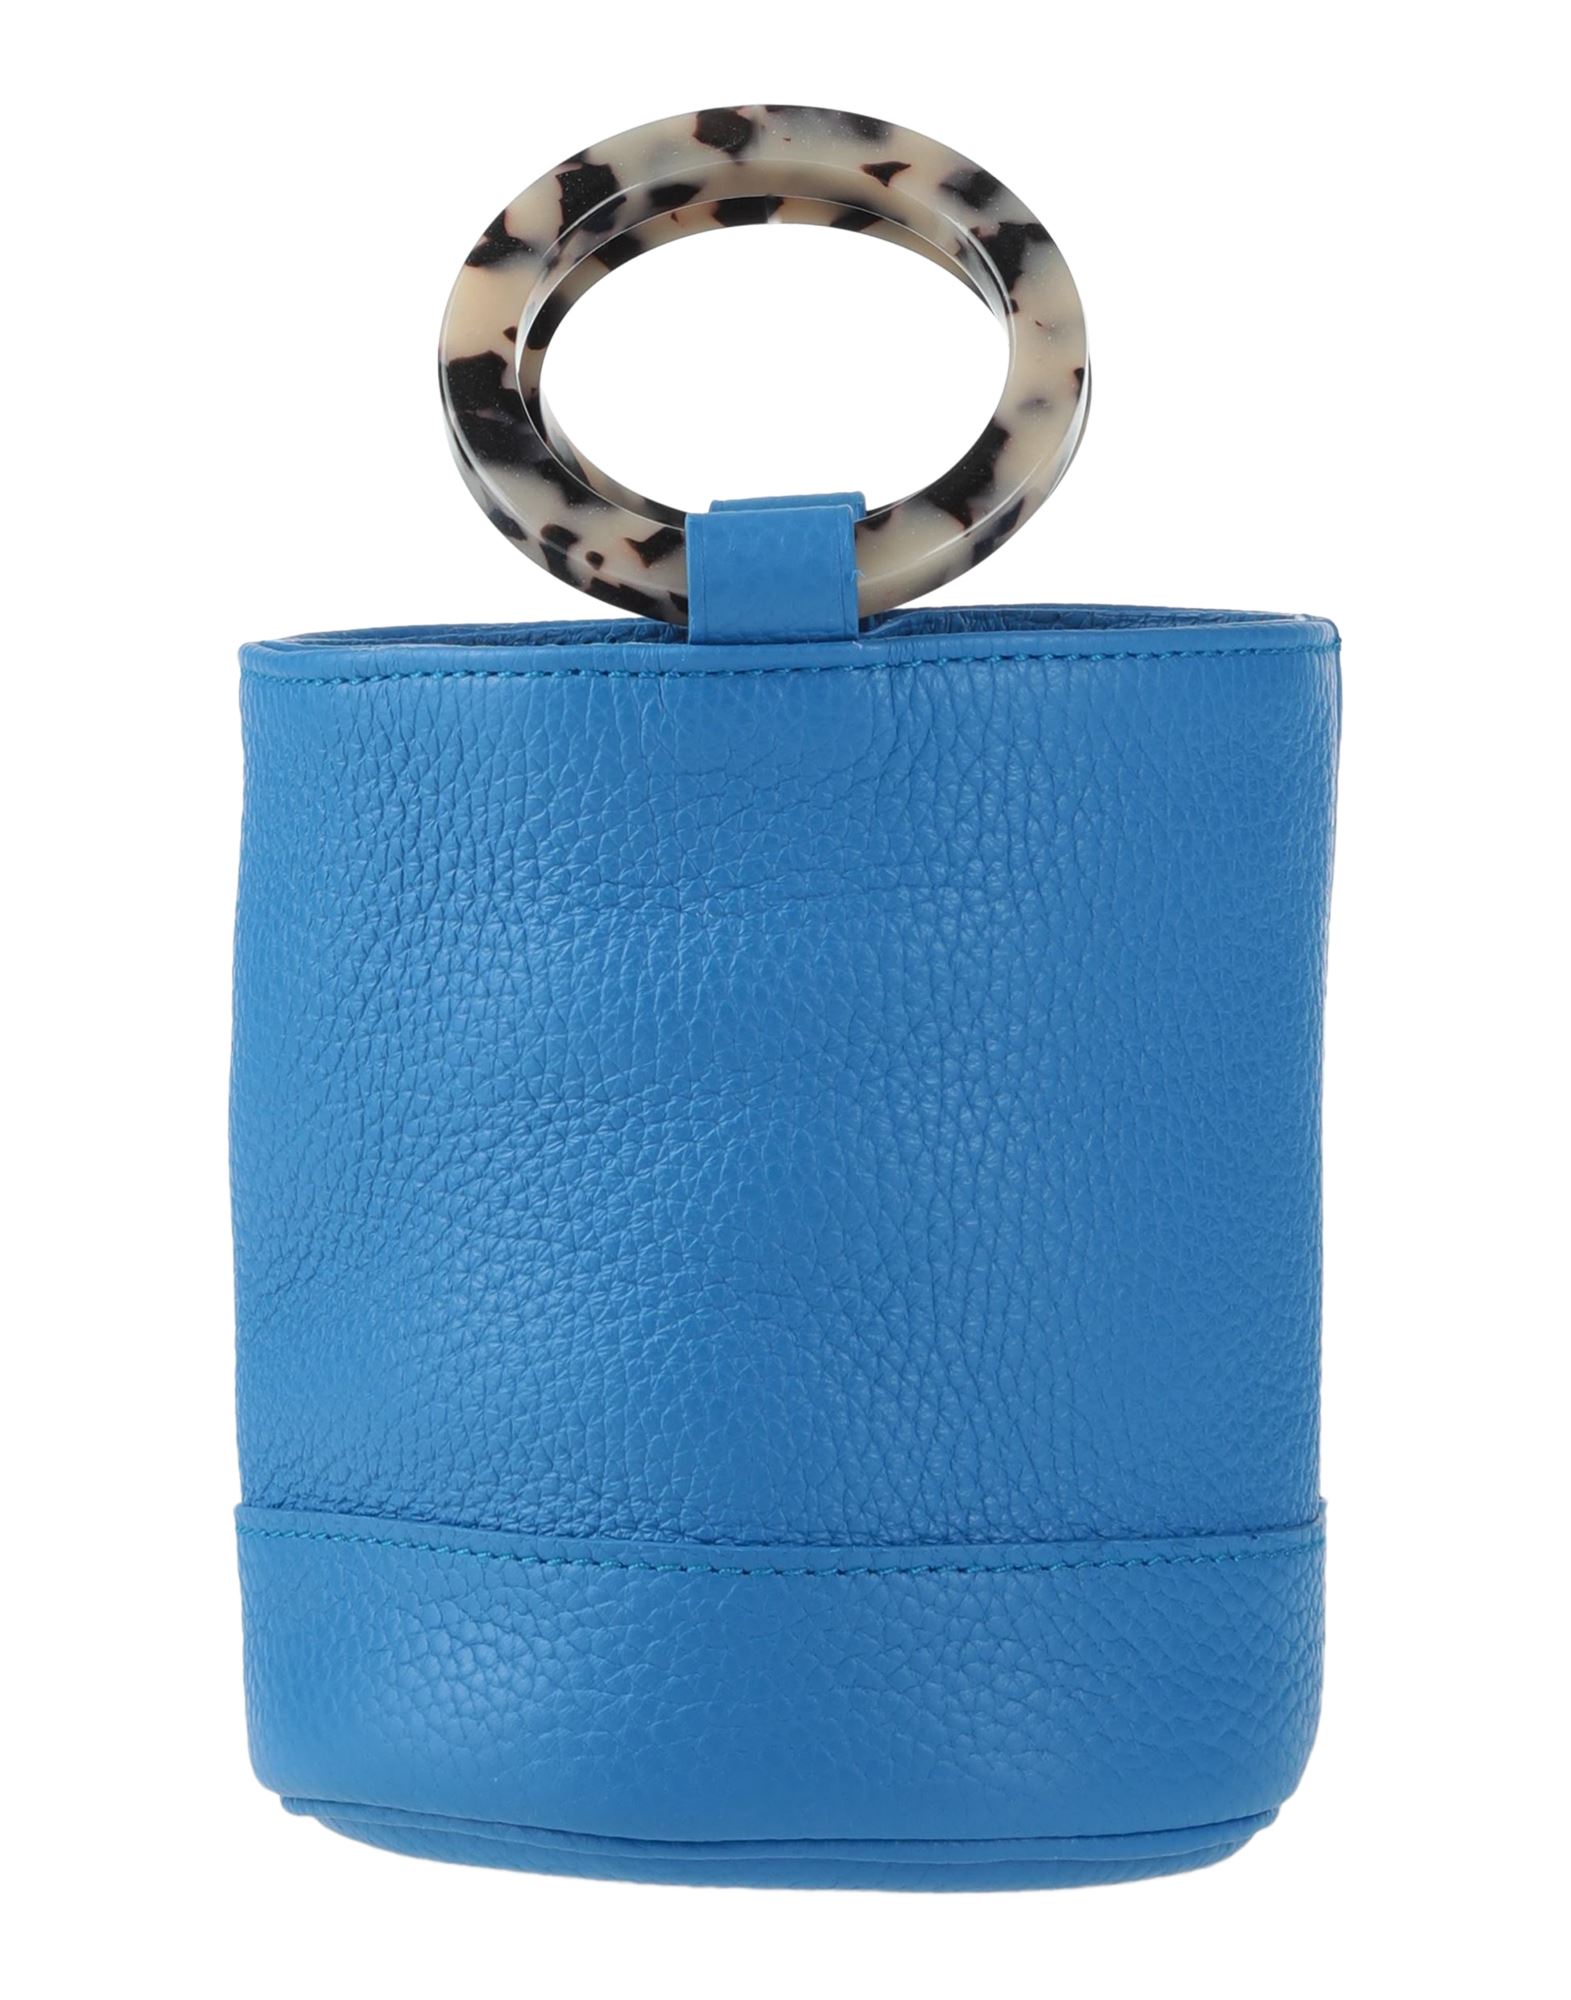 Simon Miller Handbags In Blue